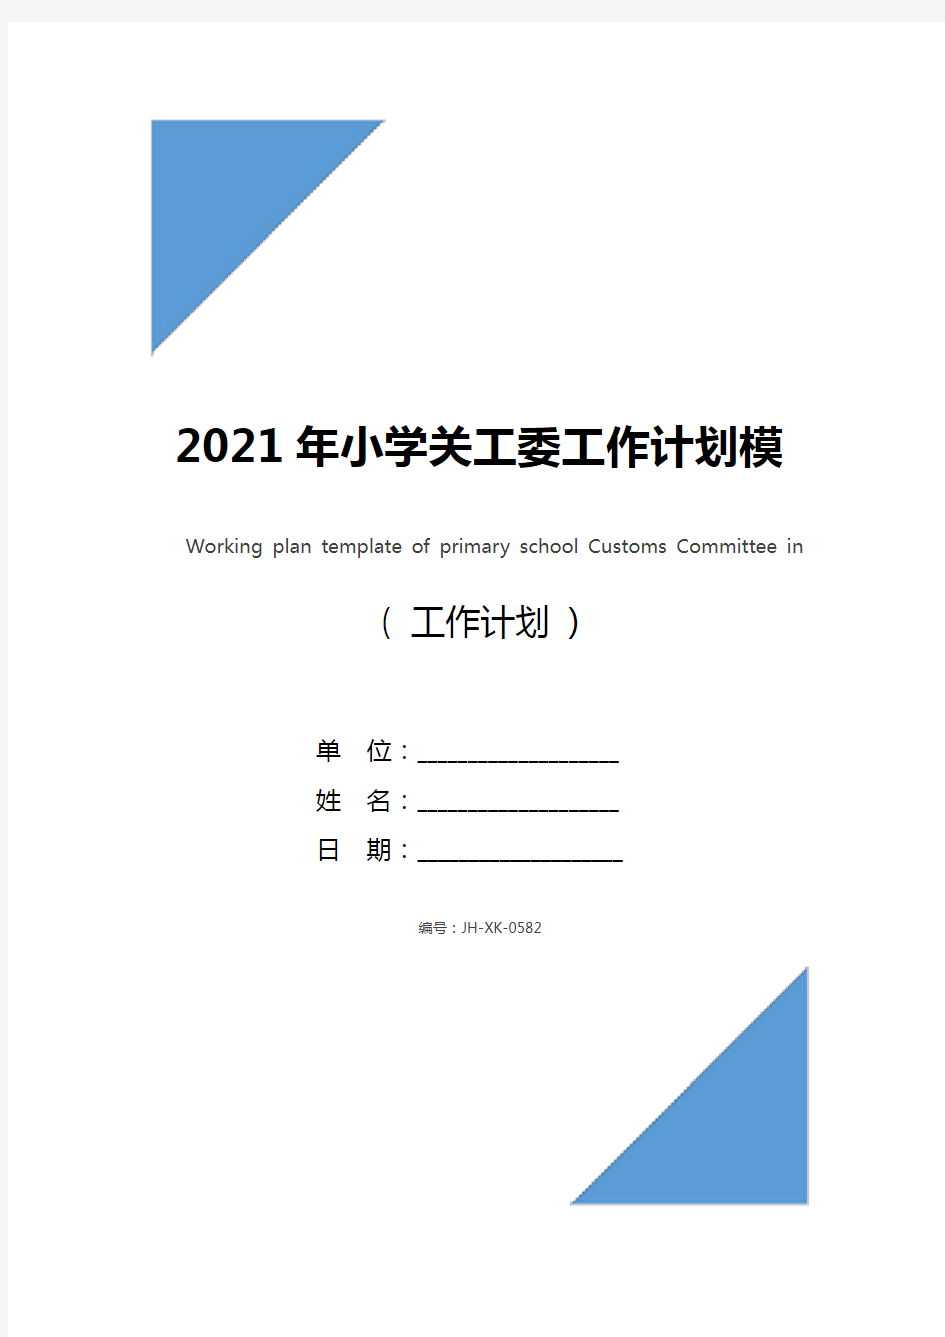 2021年小学关工委工作计划模板(通用版)